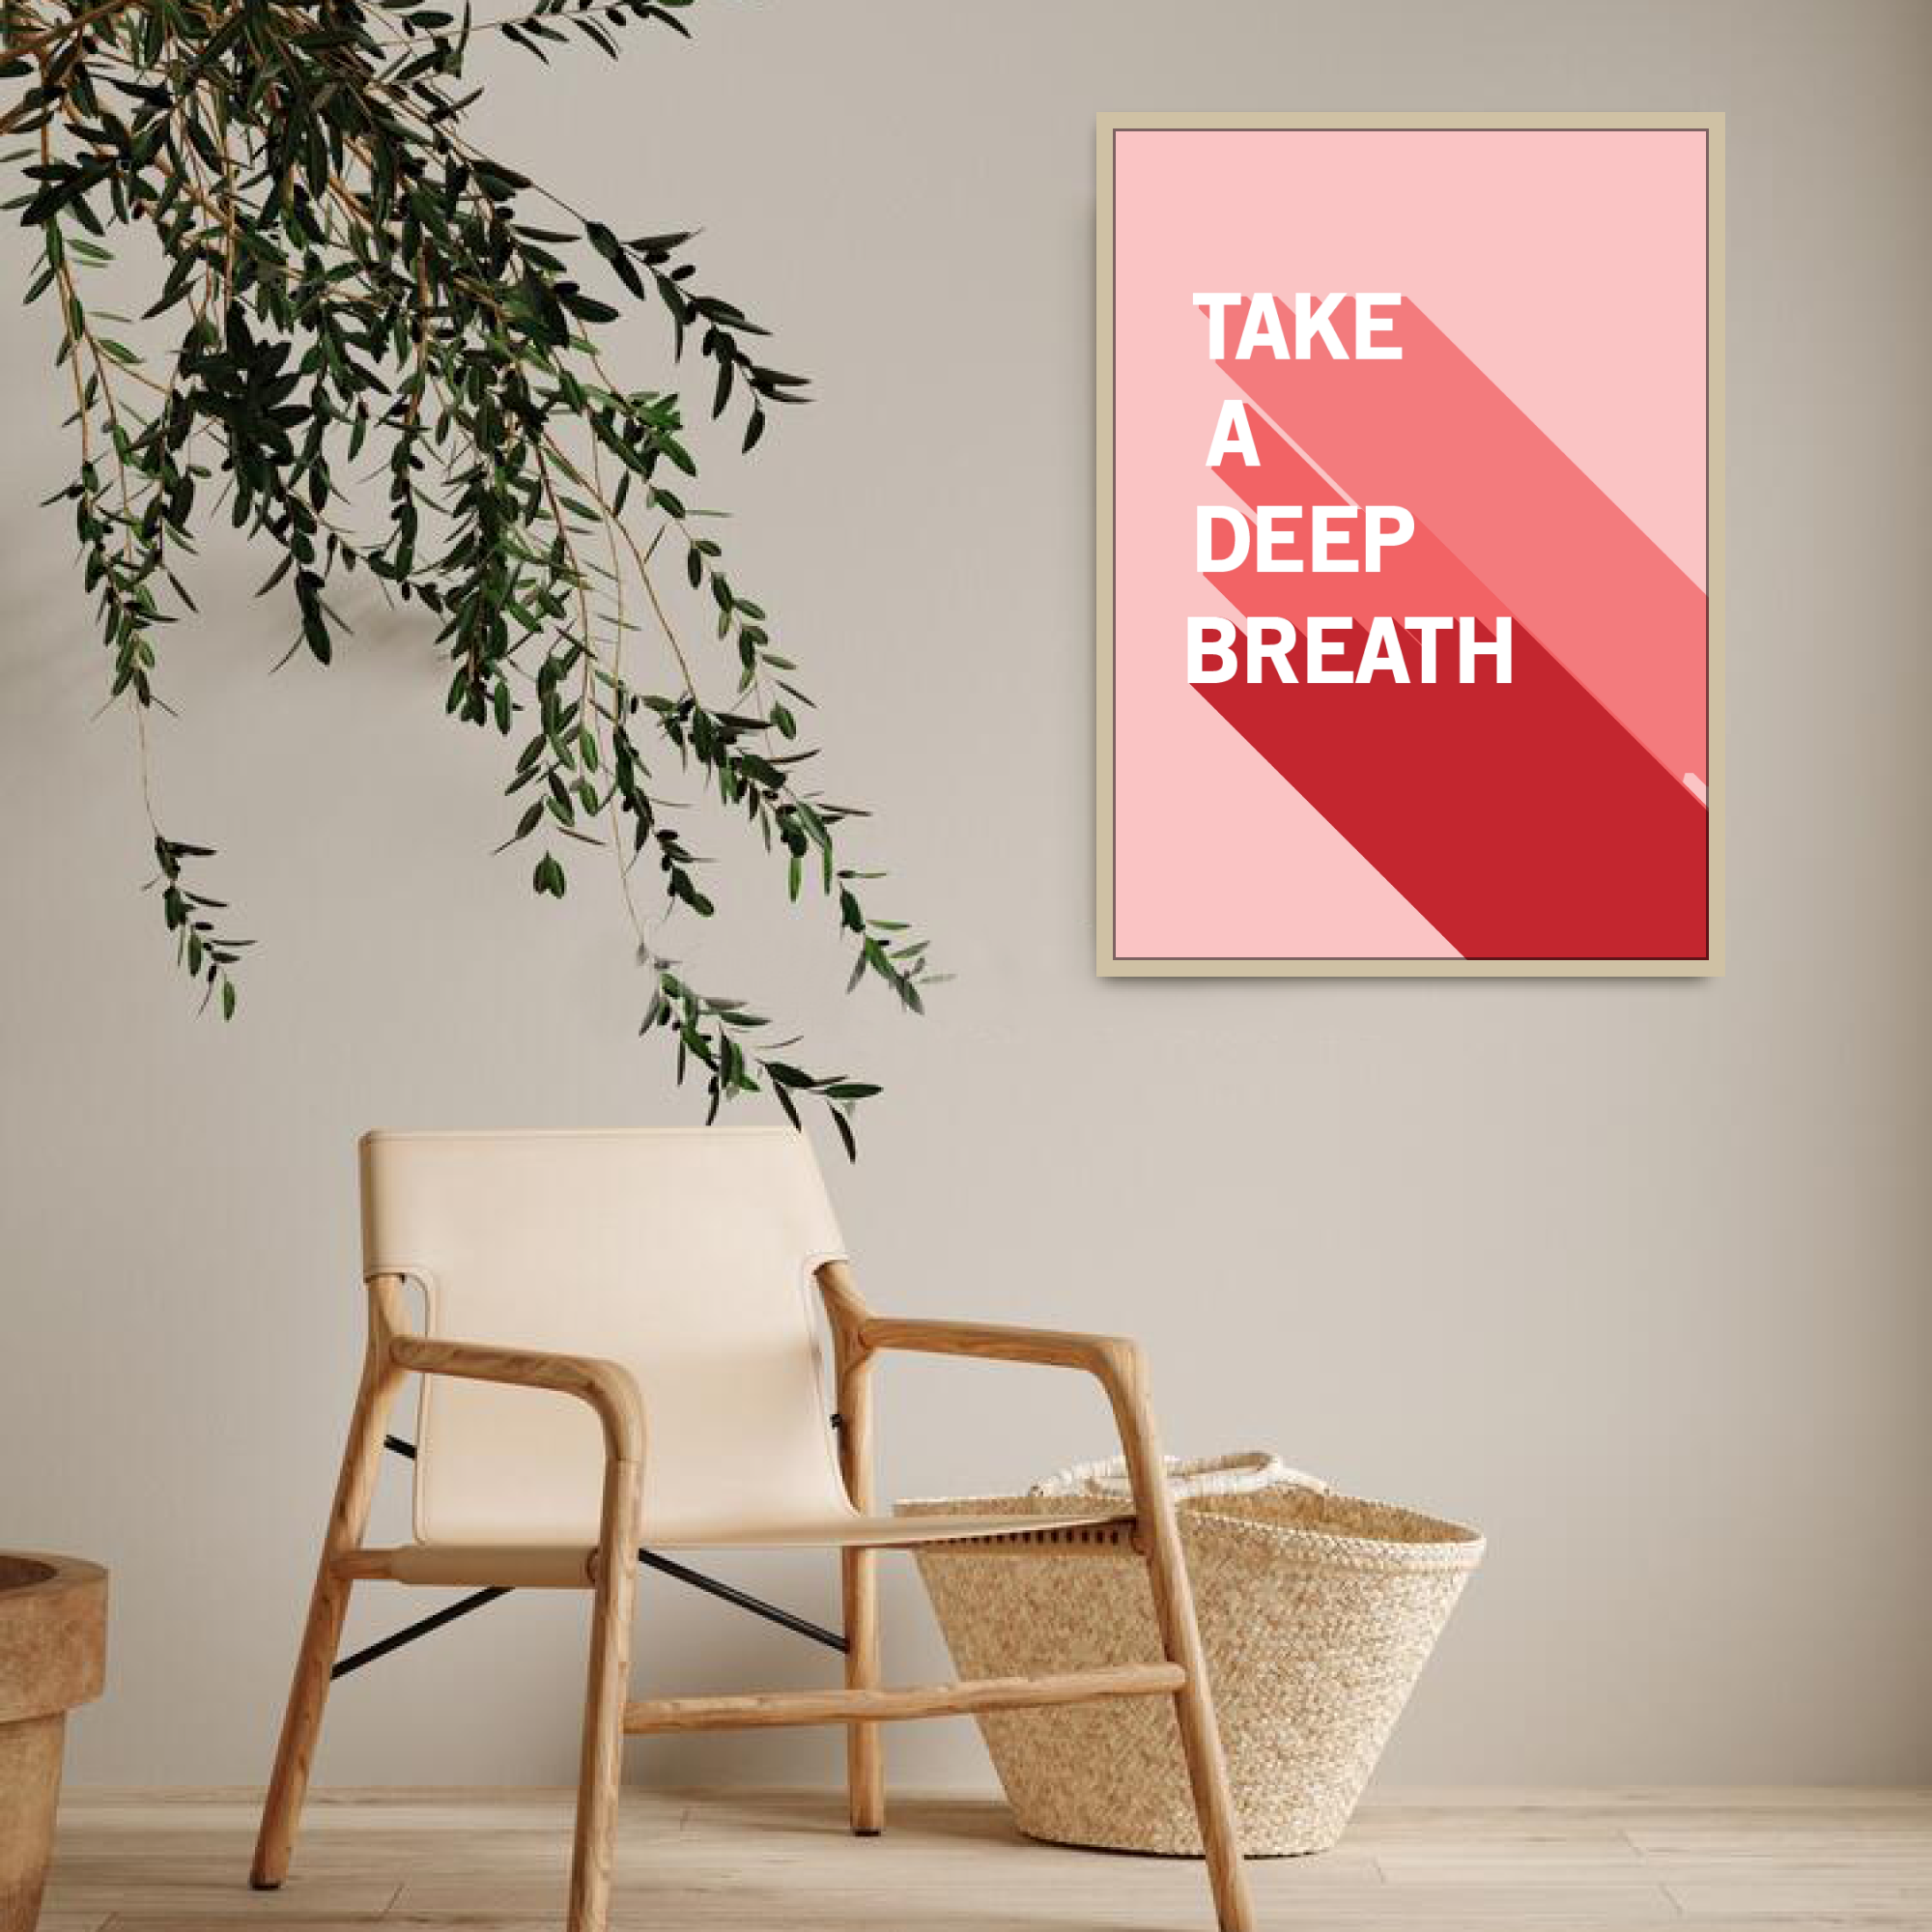 Poster: "Take A Deep Breath"